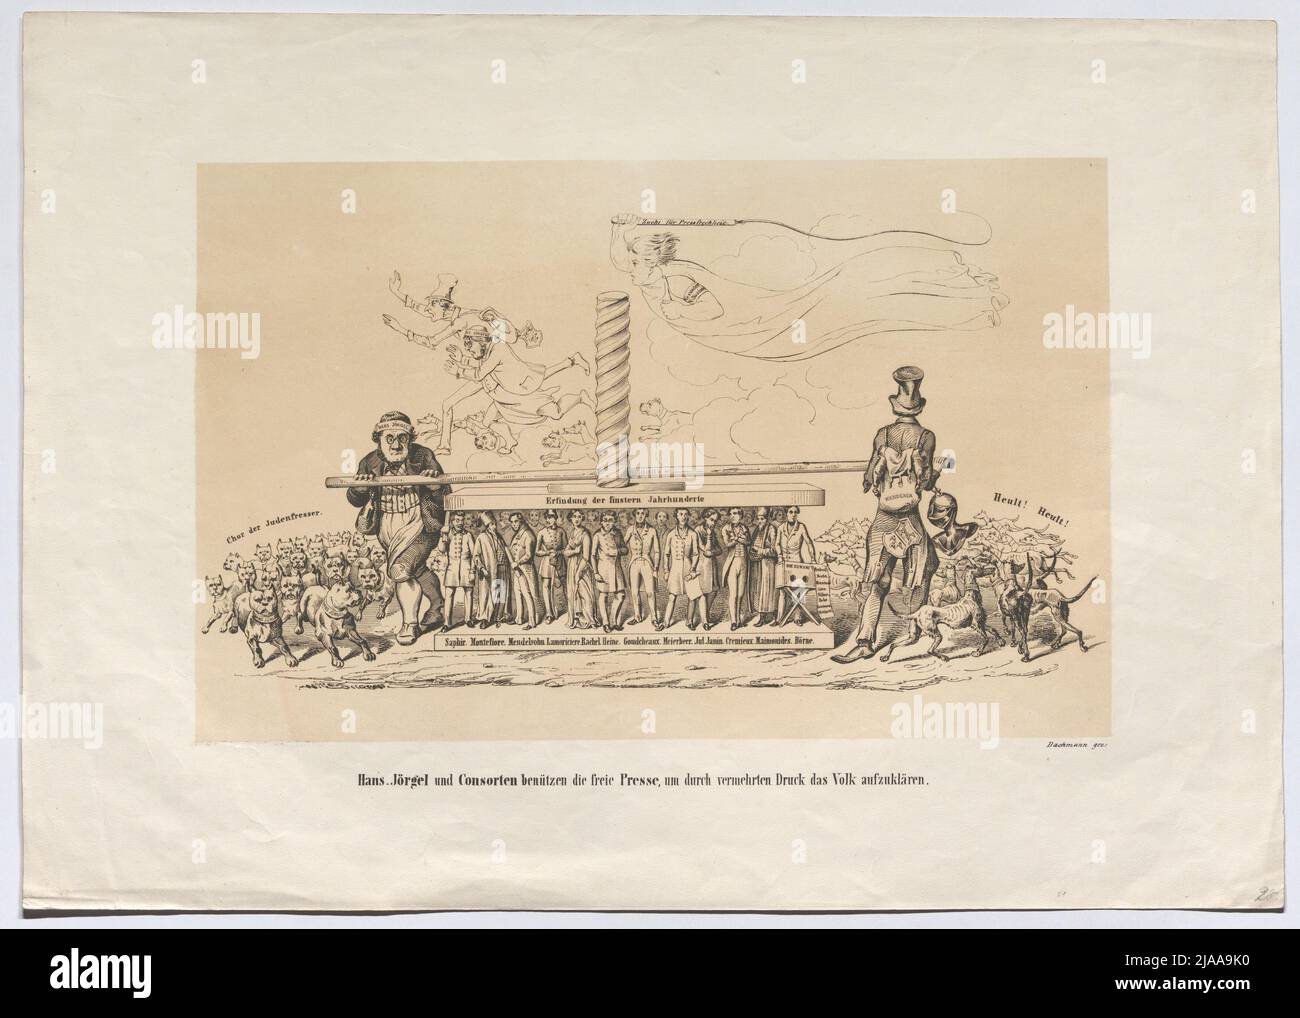 "Hans Jörgel et Consorten utilisent la presse libre pour éduquer les gens par une pression accrue." (Caricature contre la presse antisémite, 1848). Bachmann, Lithographie Banque D'Images